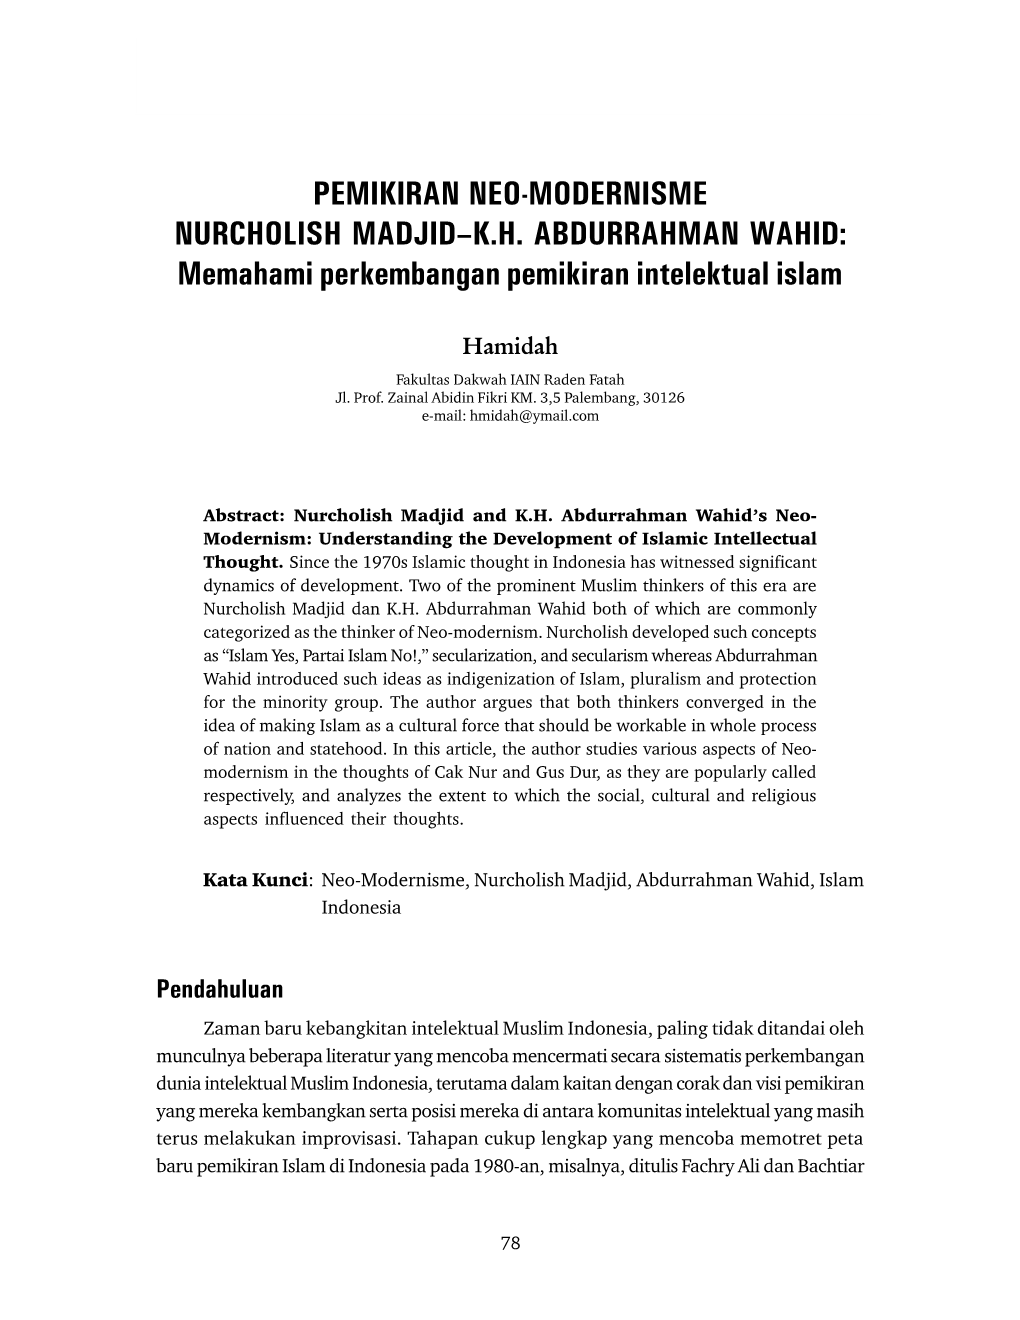 PEMIKIRAN NEO-MODERNISME NURCHOLISH MADJID–K.H. ABDURRAHMAN WAHID: Memahami Perkembangan Pemikiran Intelektual Islam